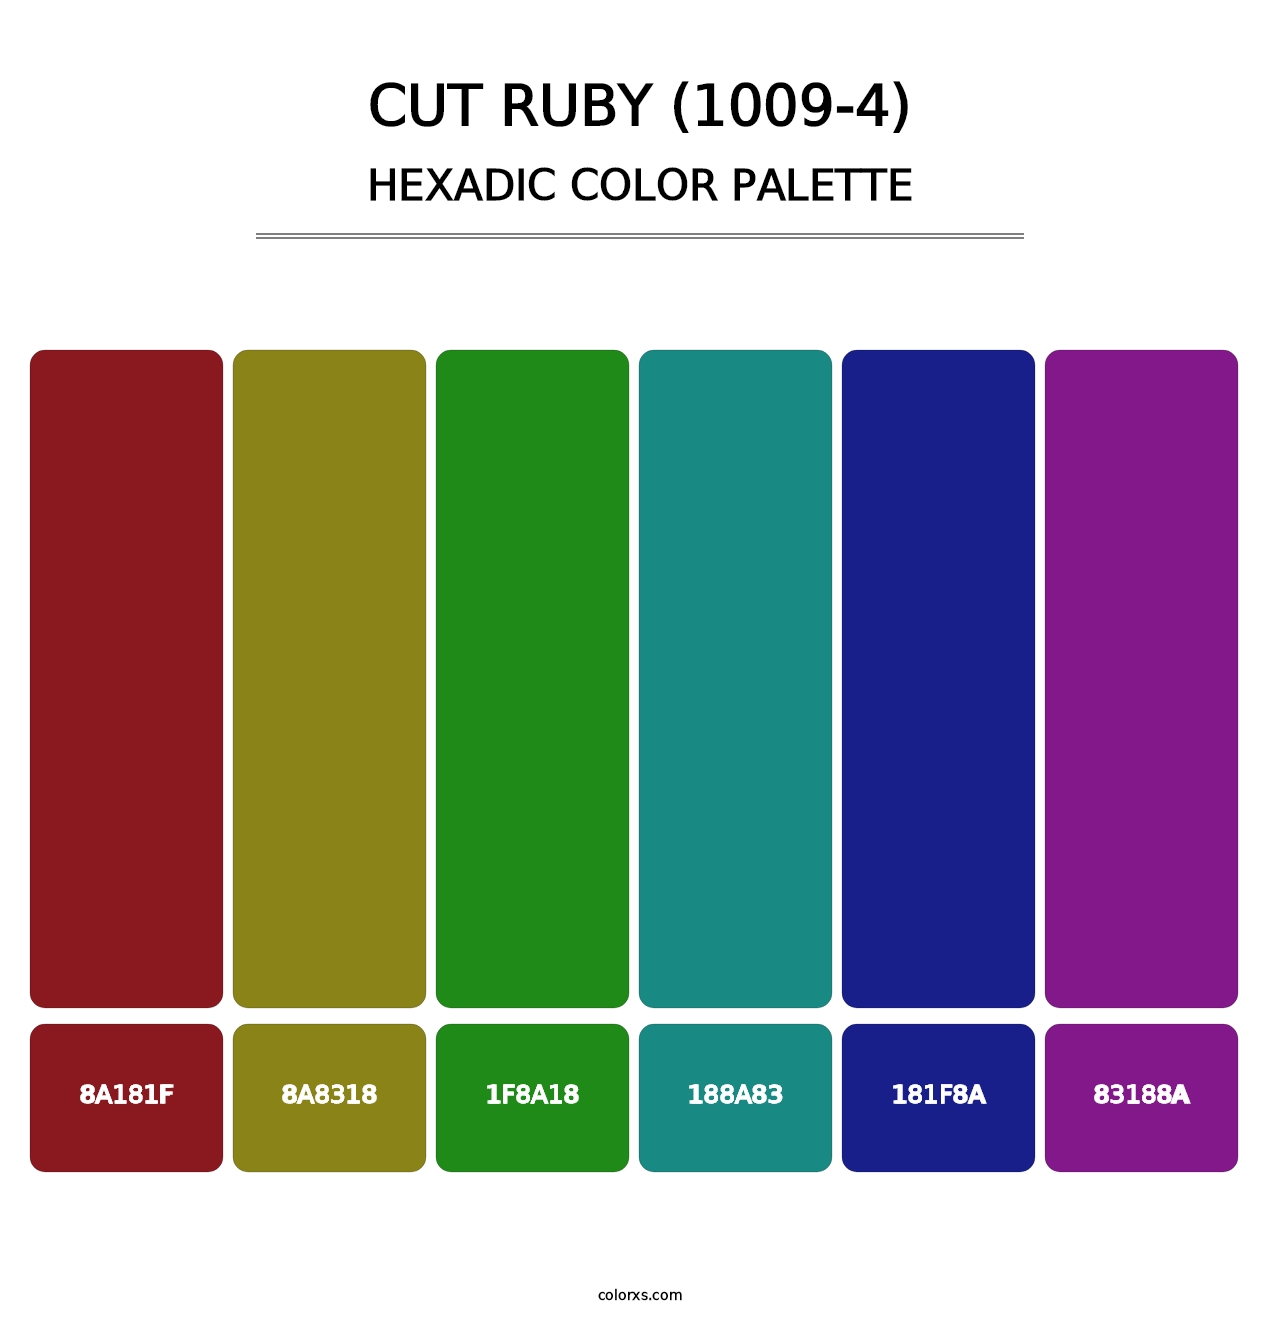 Cut Ruby (1009-4) - Hexadic Color Palette